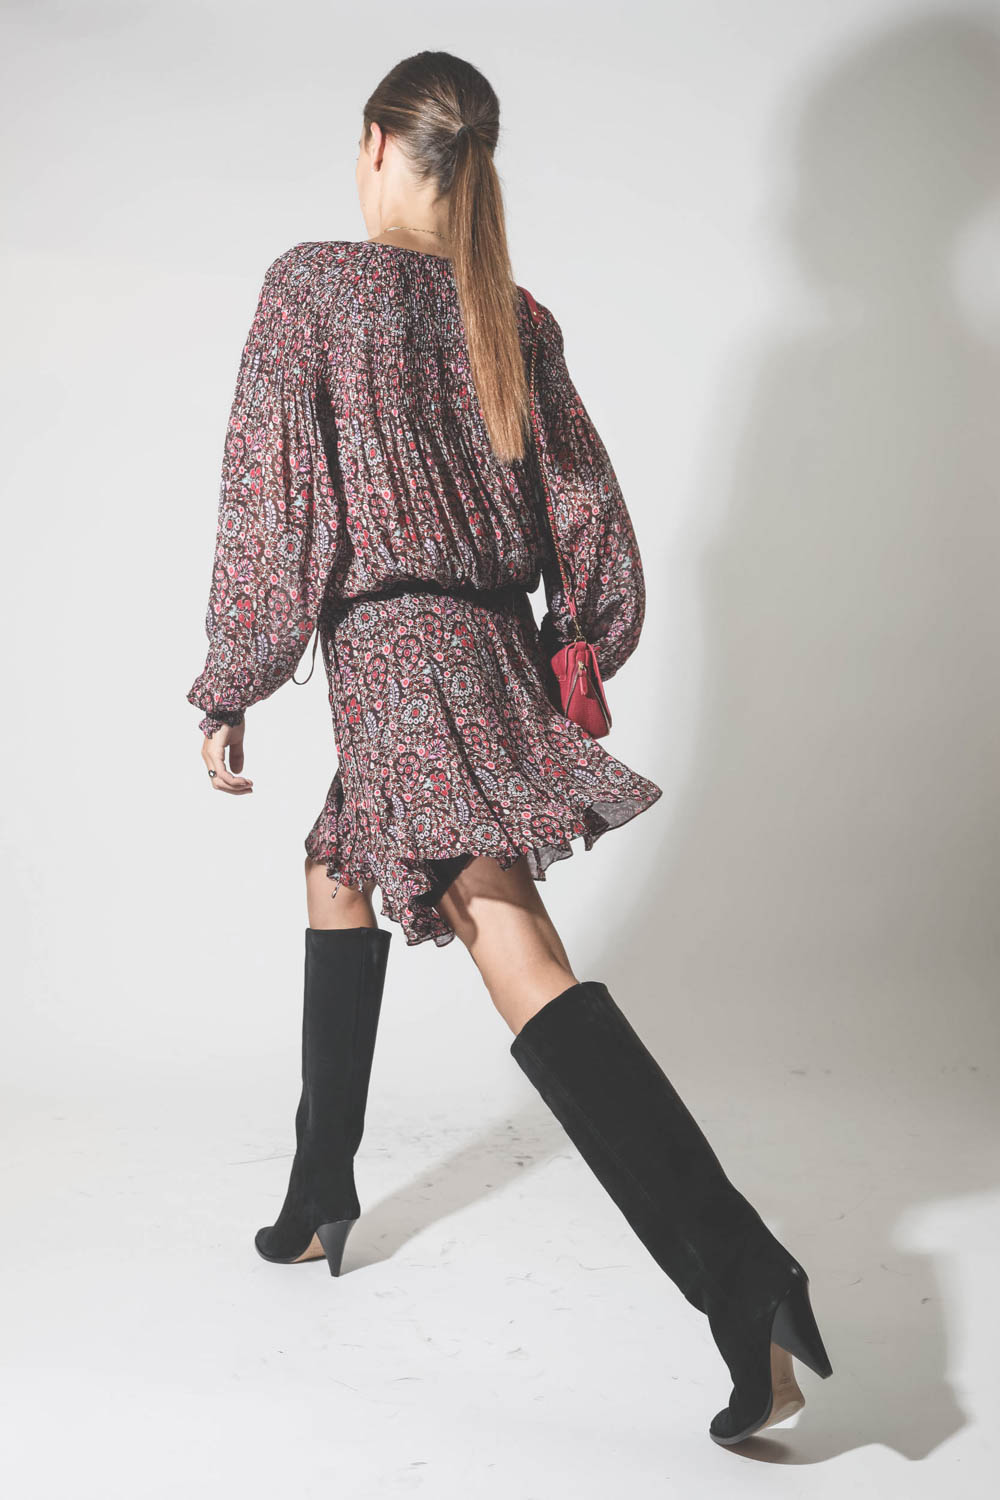 Robe manches longues au dessus du genoux en viscose imprimé fleurs marron et rose Noanne Marant Etoile. Porté de profil.